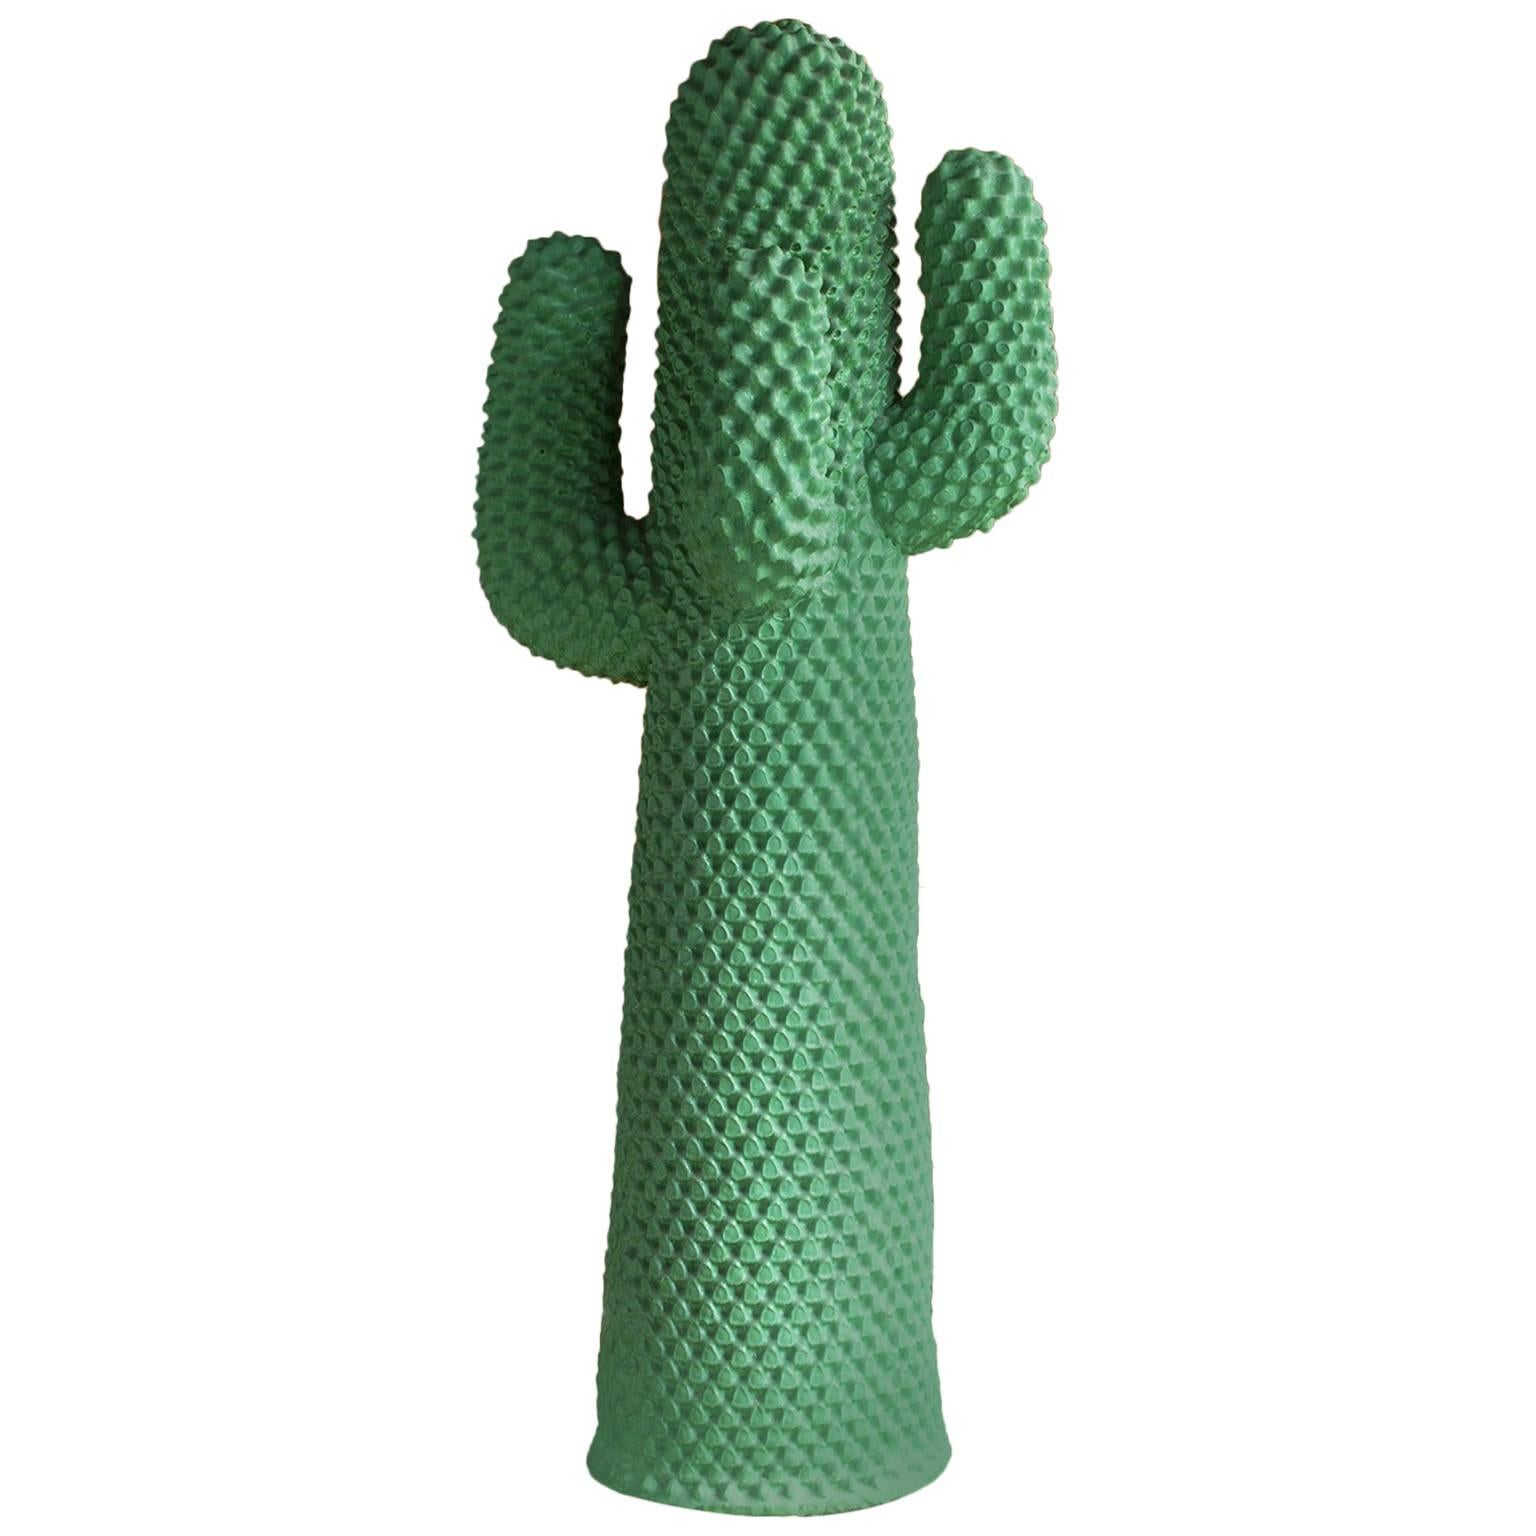 1972, Guido Drocco und Franco Mello, Cactus-Mantelständer, das beste Grün, das je gesehen wurde im Angebot